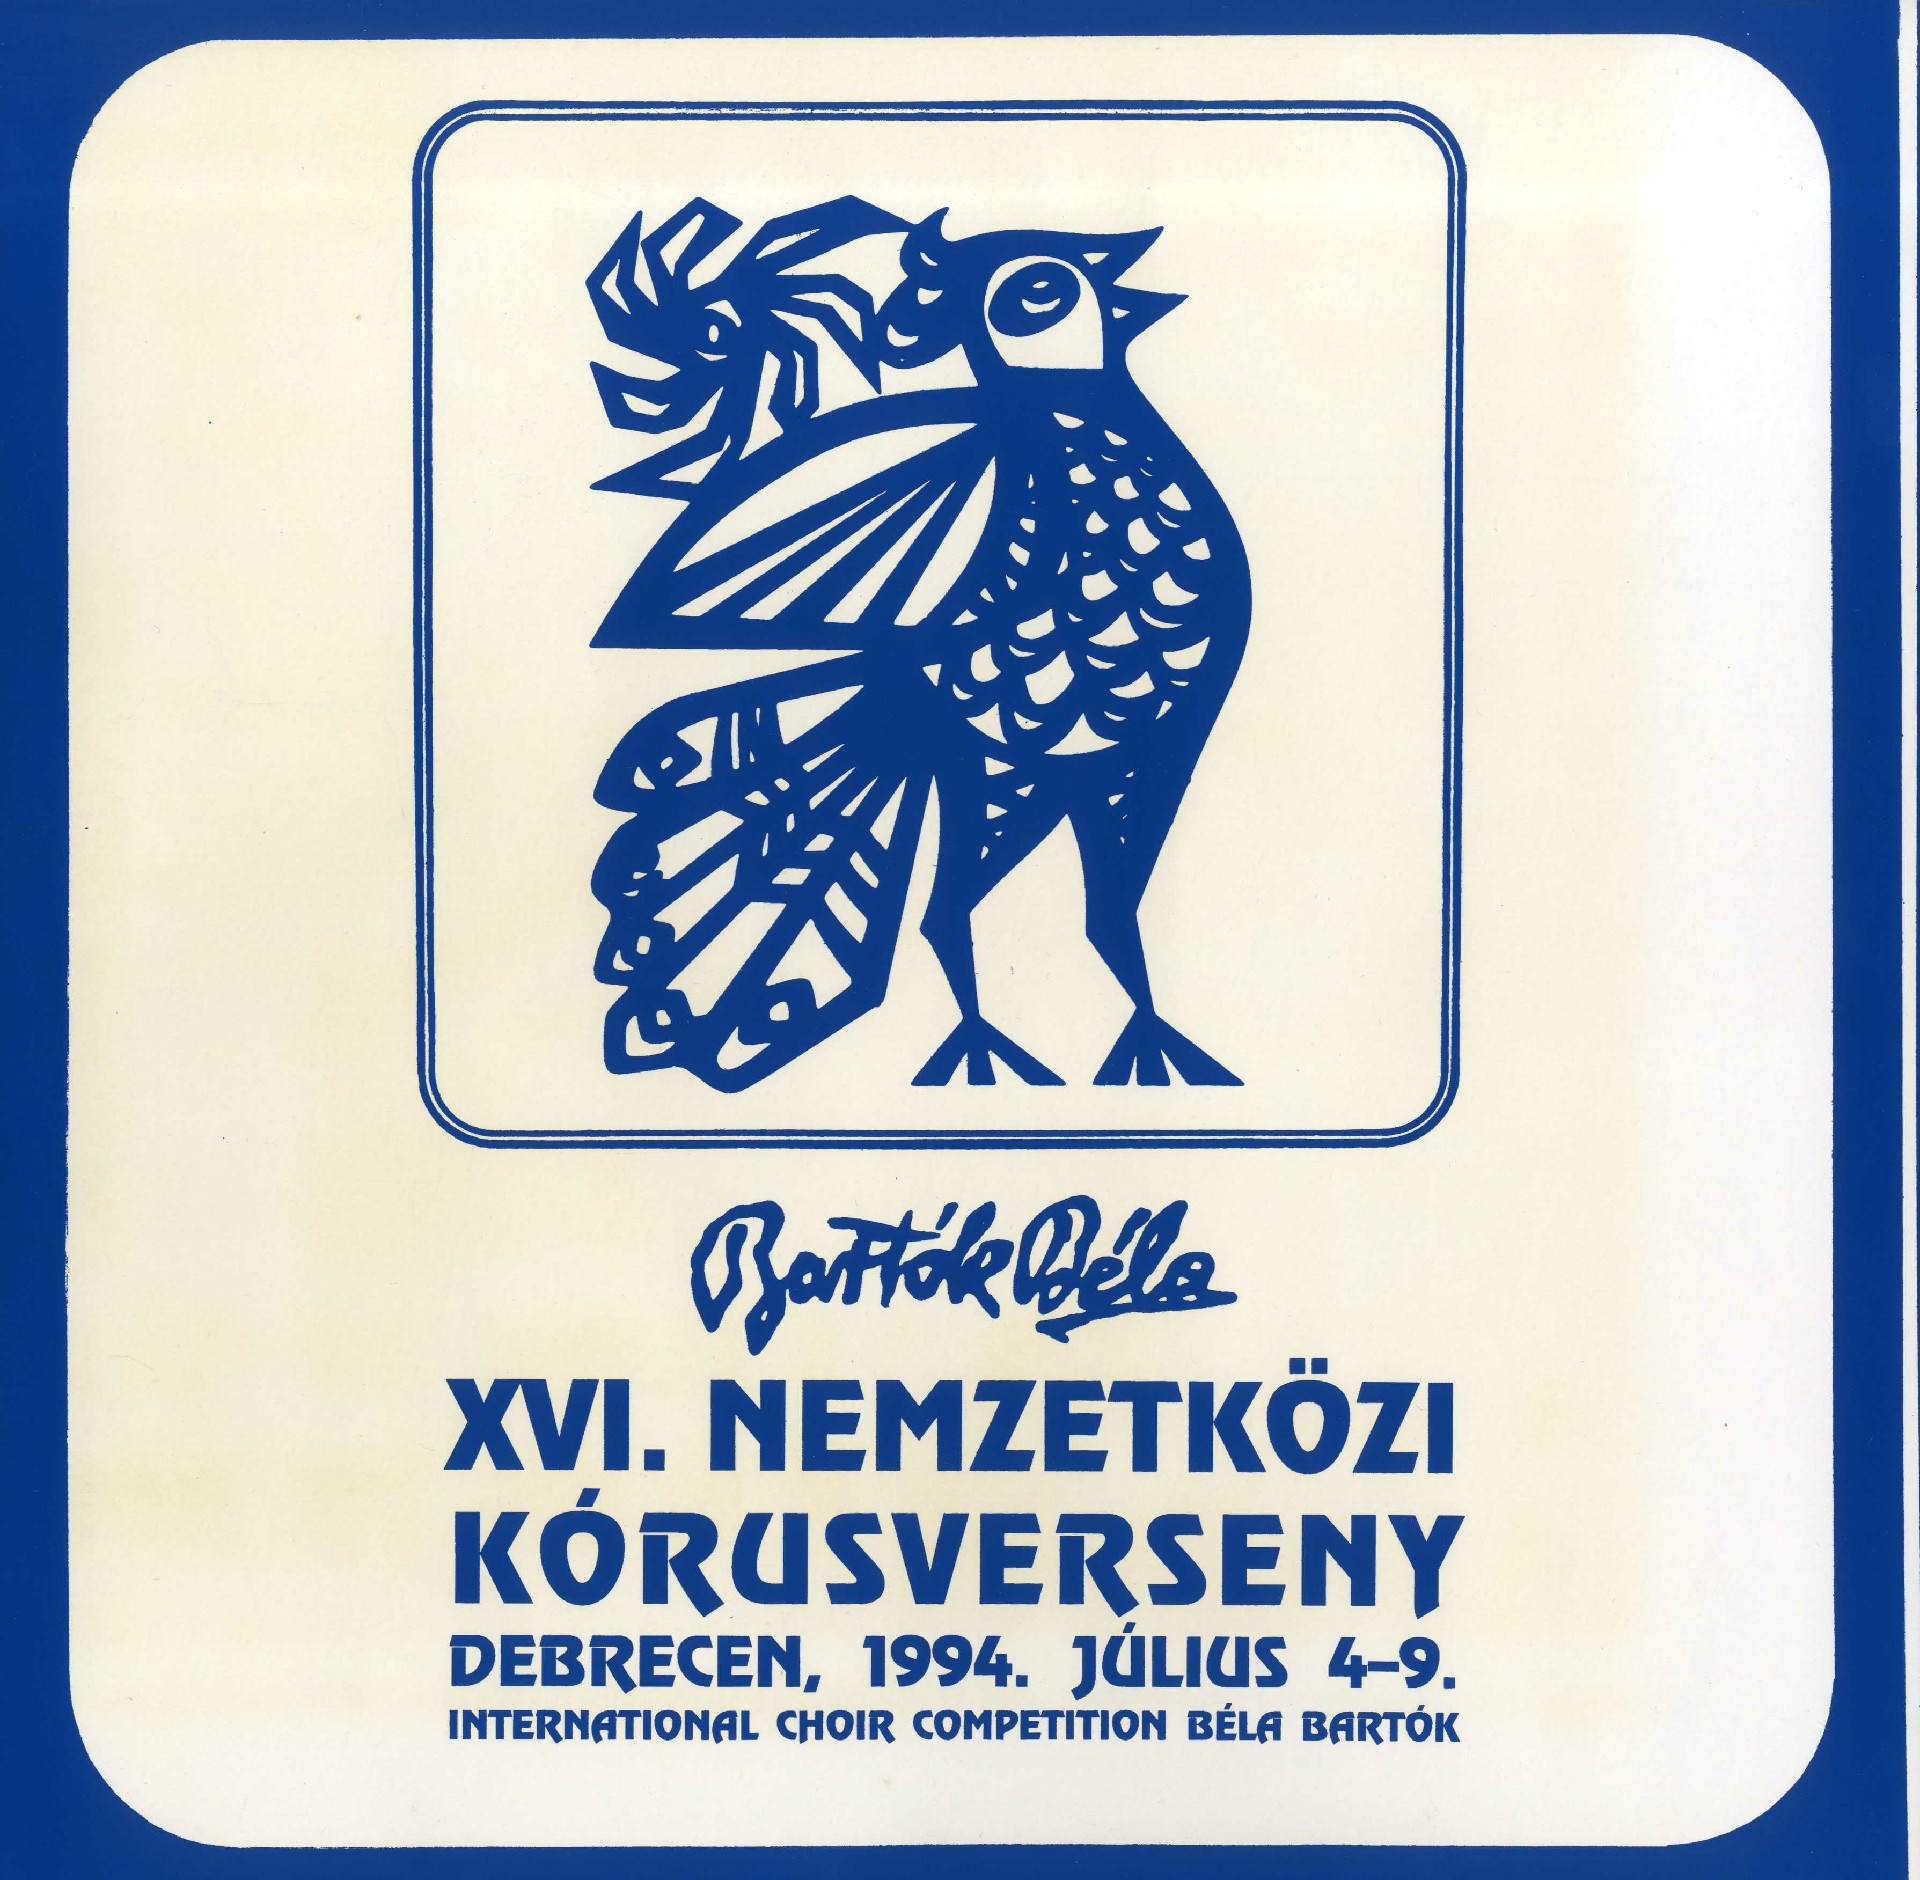 Међународни хорски конкурс ''Бела Барток'' у Дебрецину 1994.